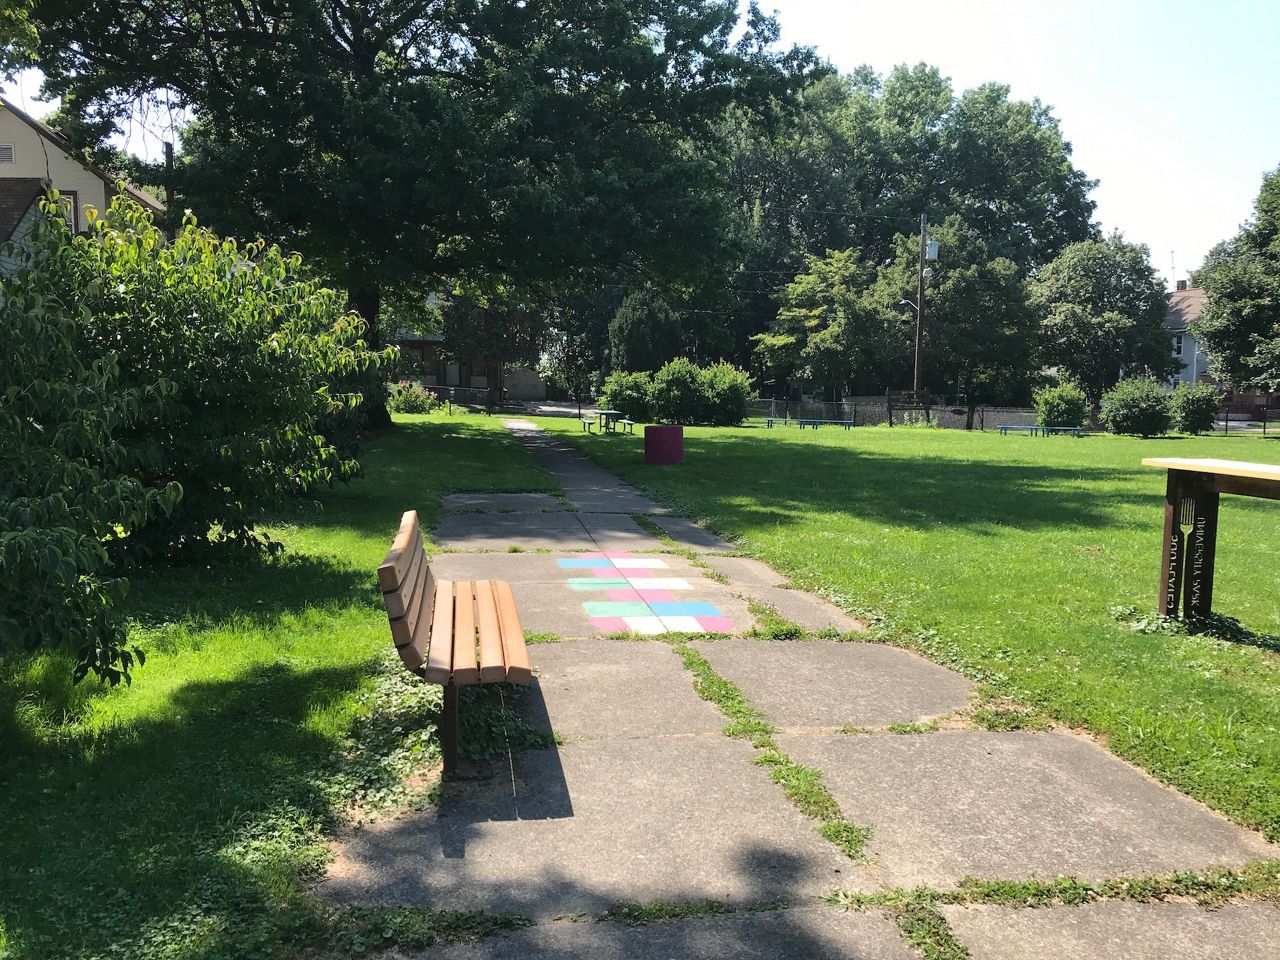 Food forest, mental health oasis underway in Akron’s University Park neighborhood